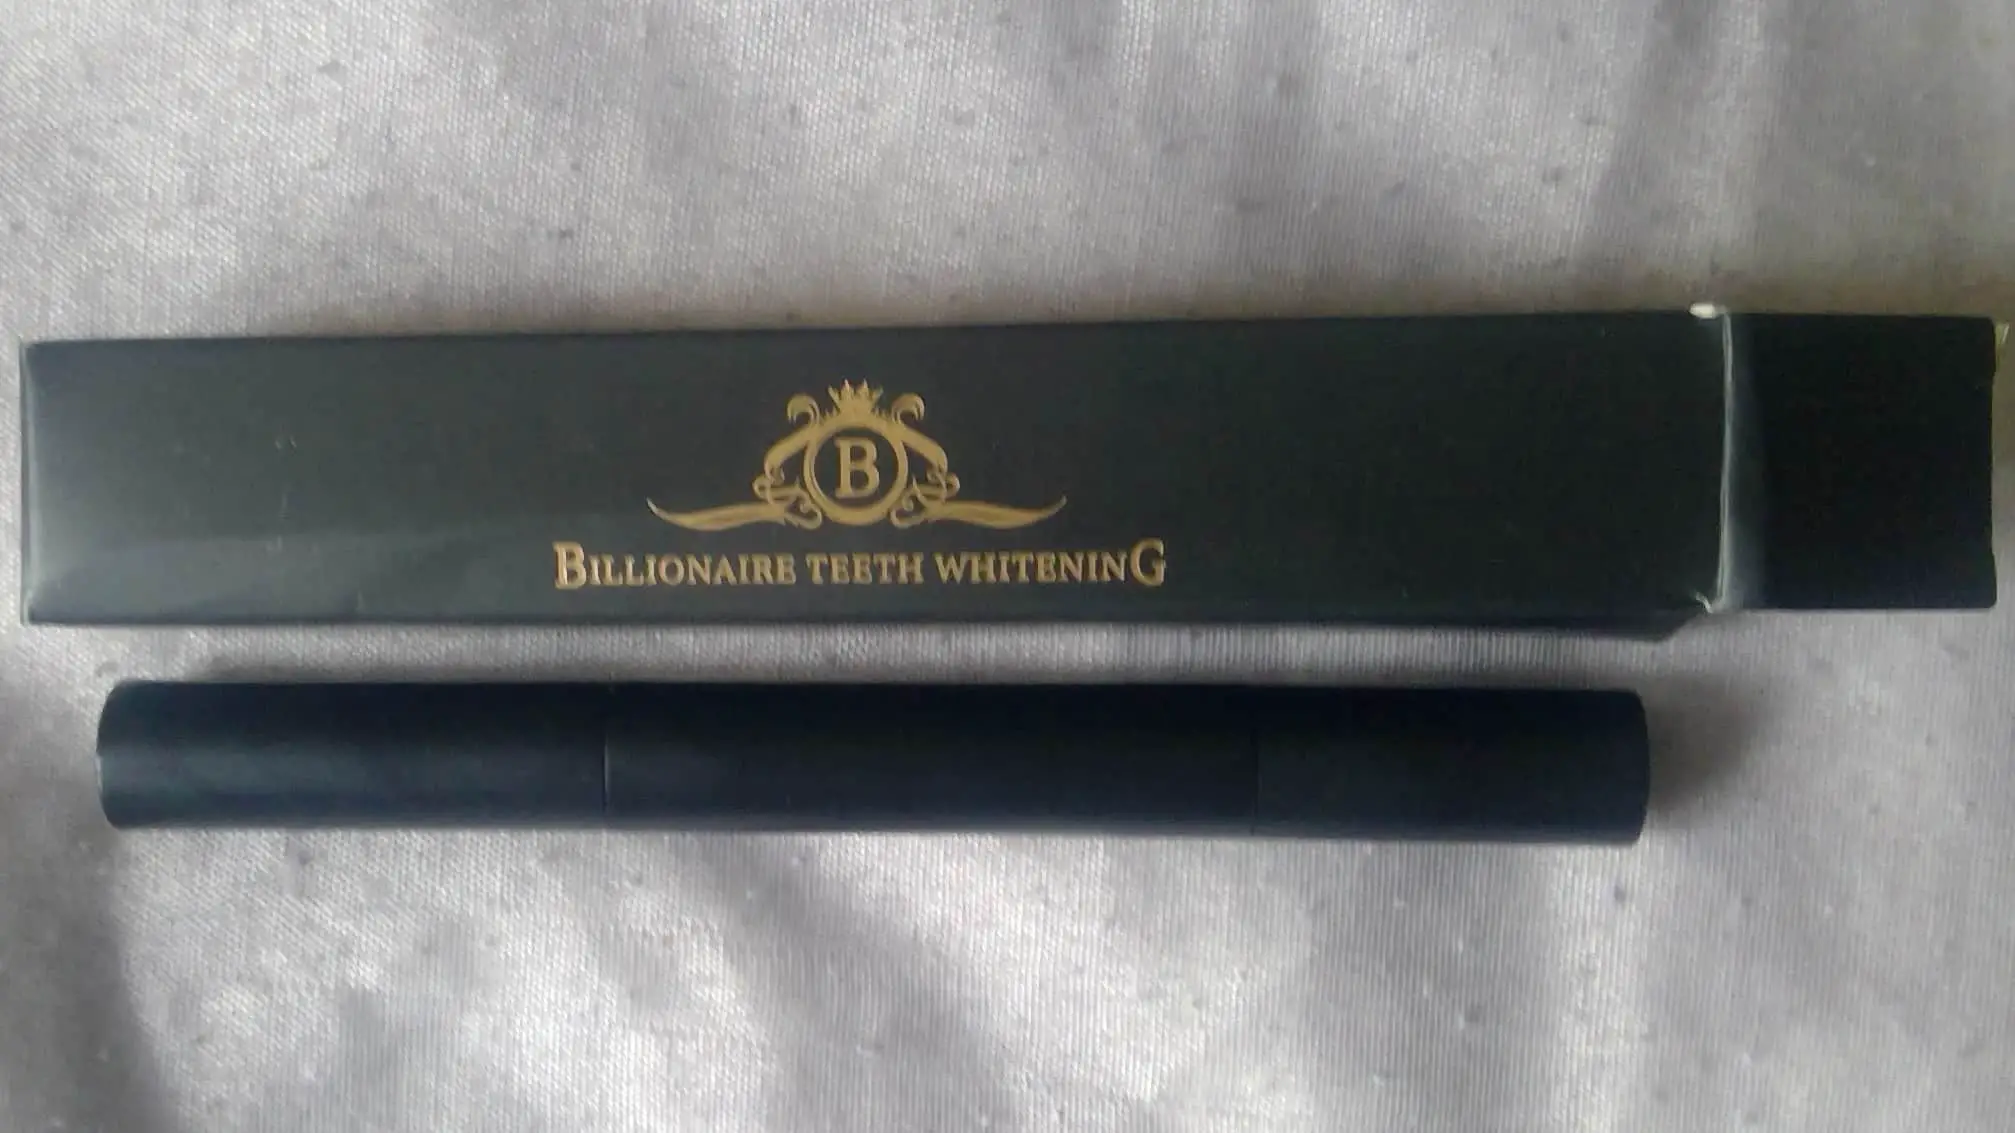 billionaire teeth whitening pen